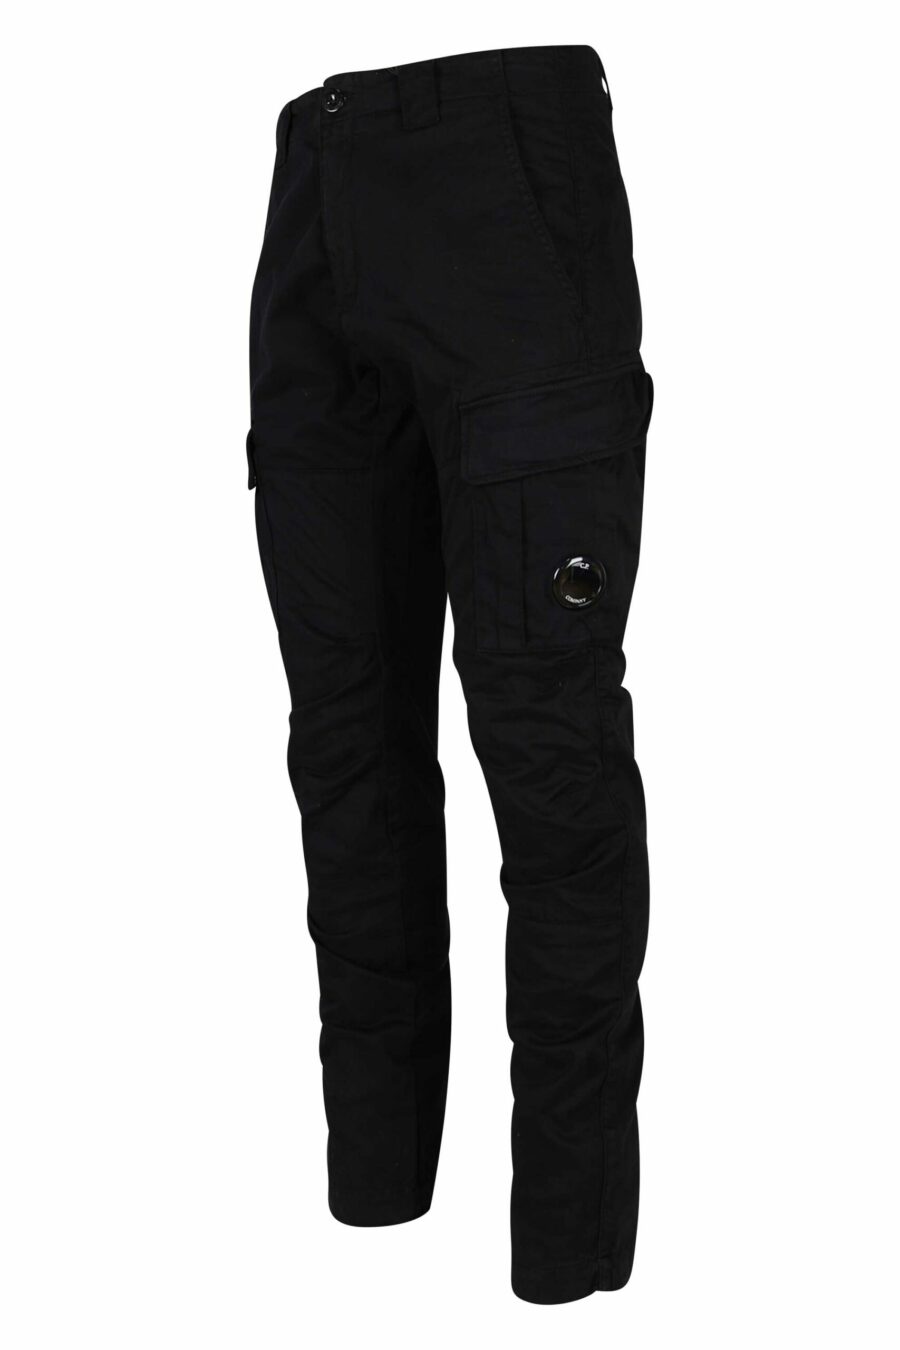 Pantalón negro estilo cargo de satén elástico y logo lente - 7620943597585 1 1 scaled